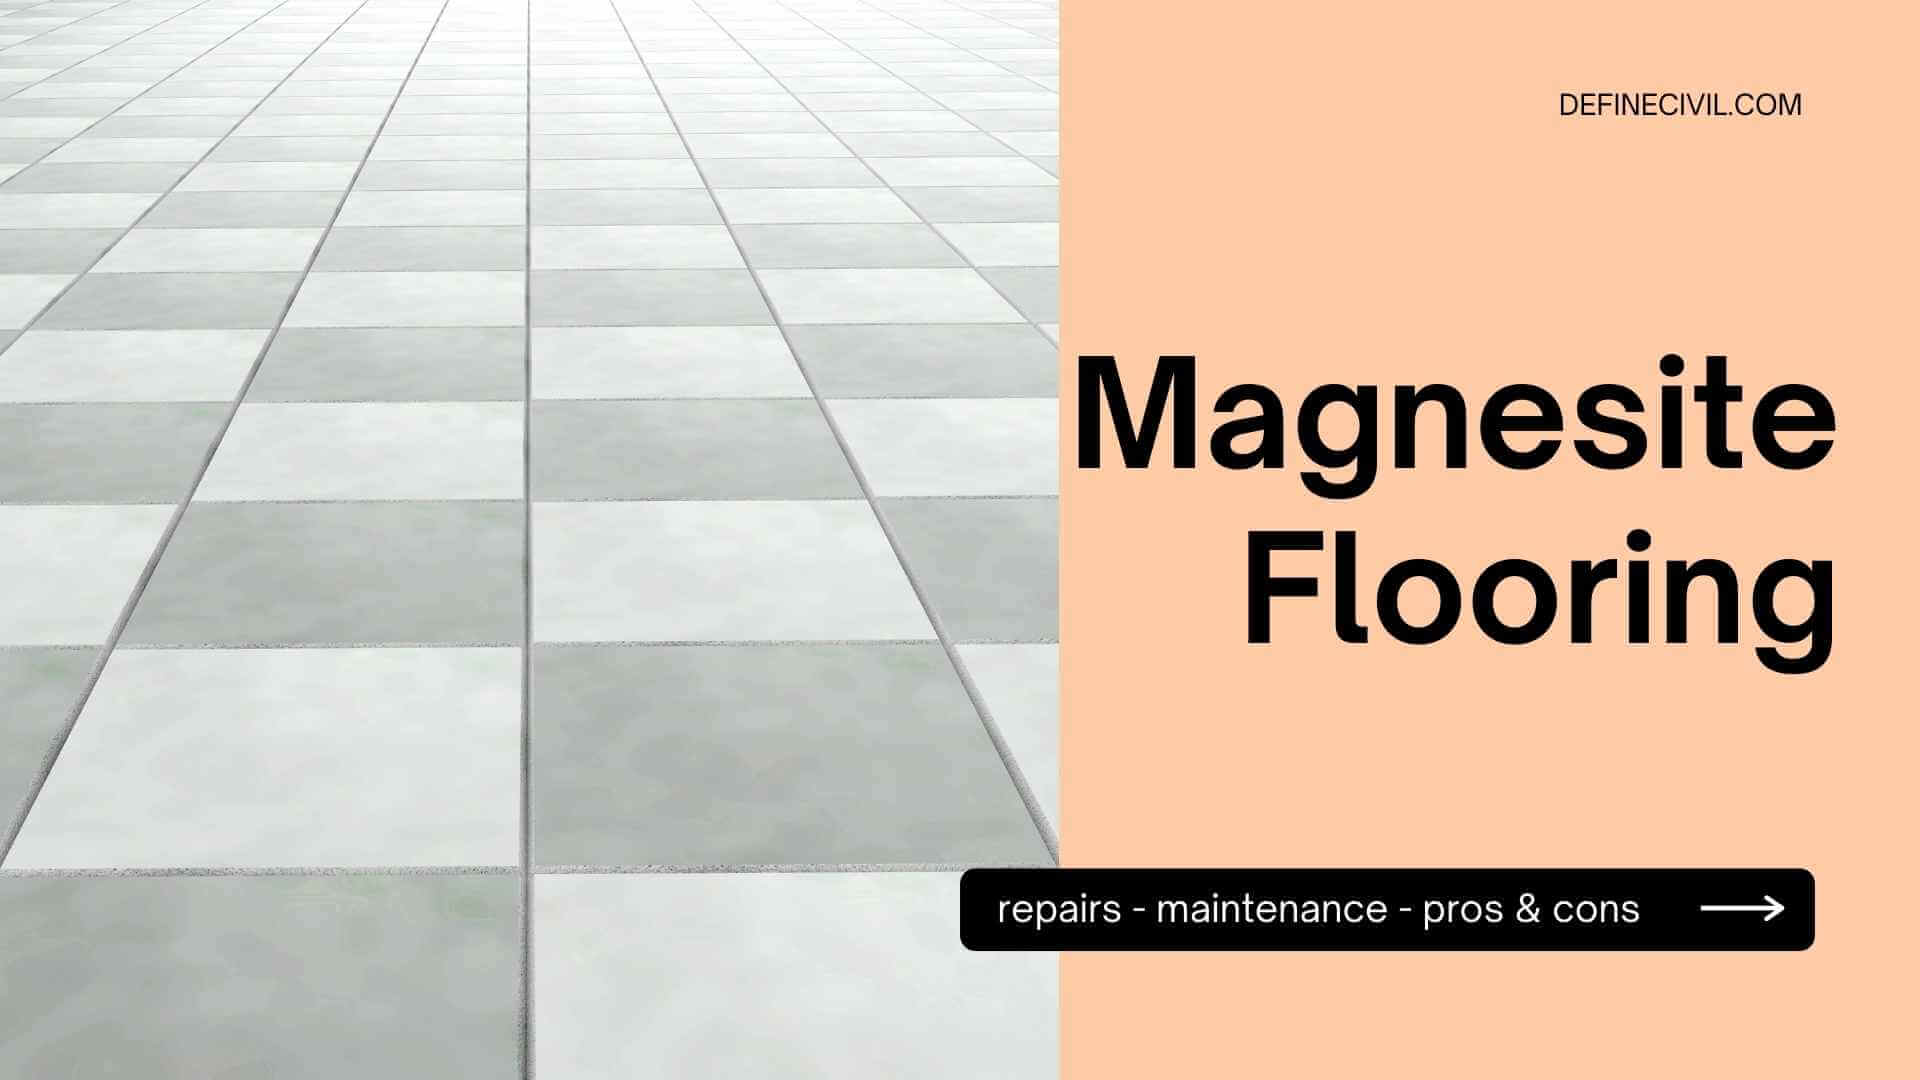 Magnesite Flooring